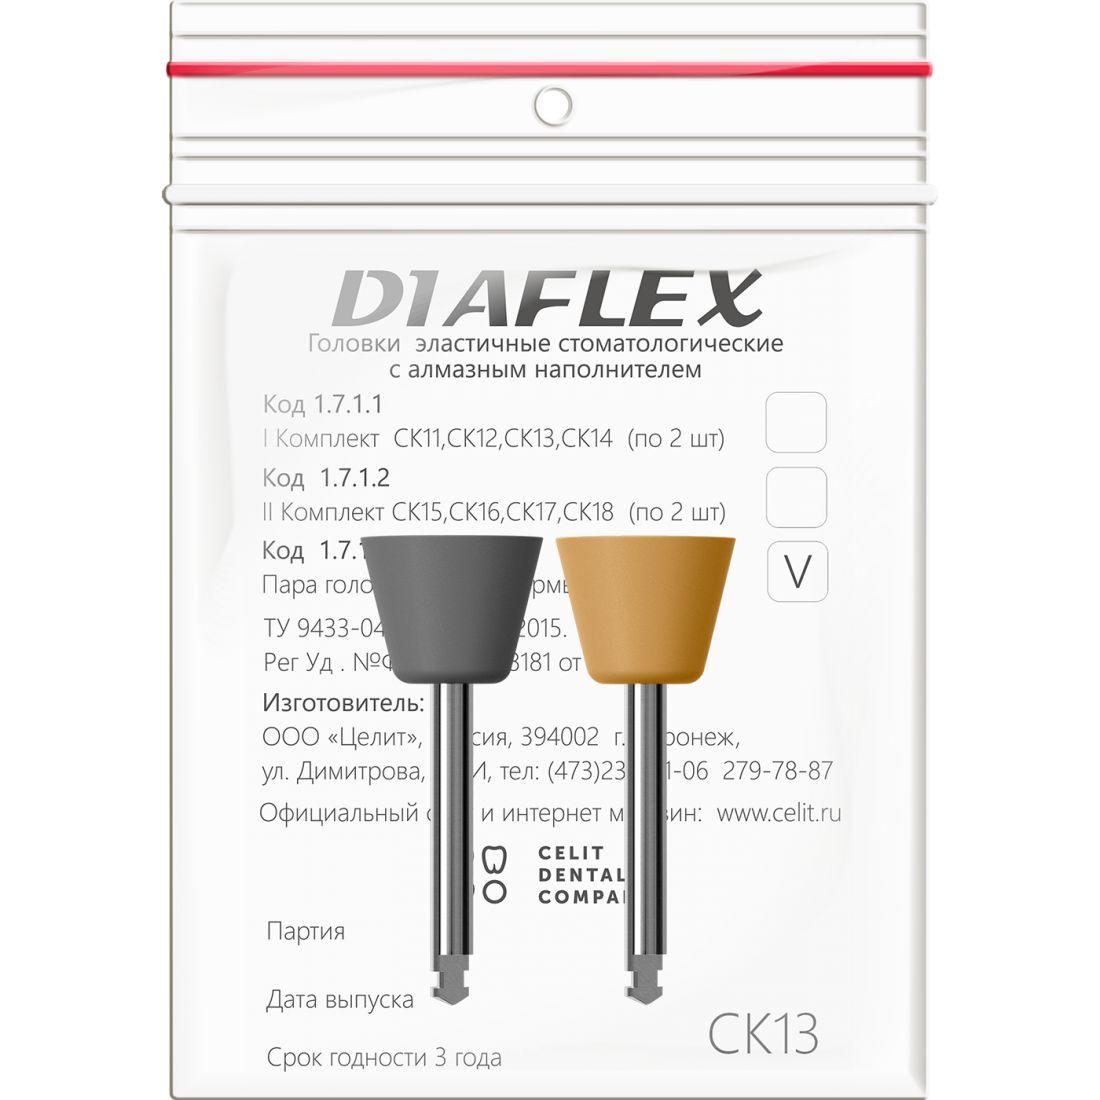 Diaflex композит СК13 - головки Диафлекс для обработки композитов (2шт)